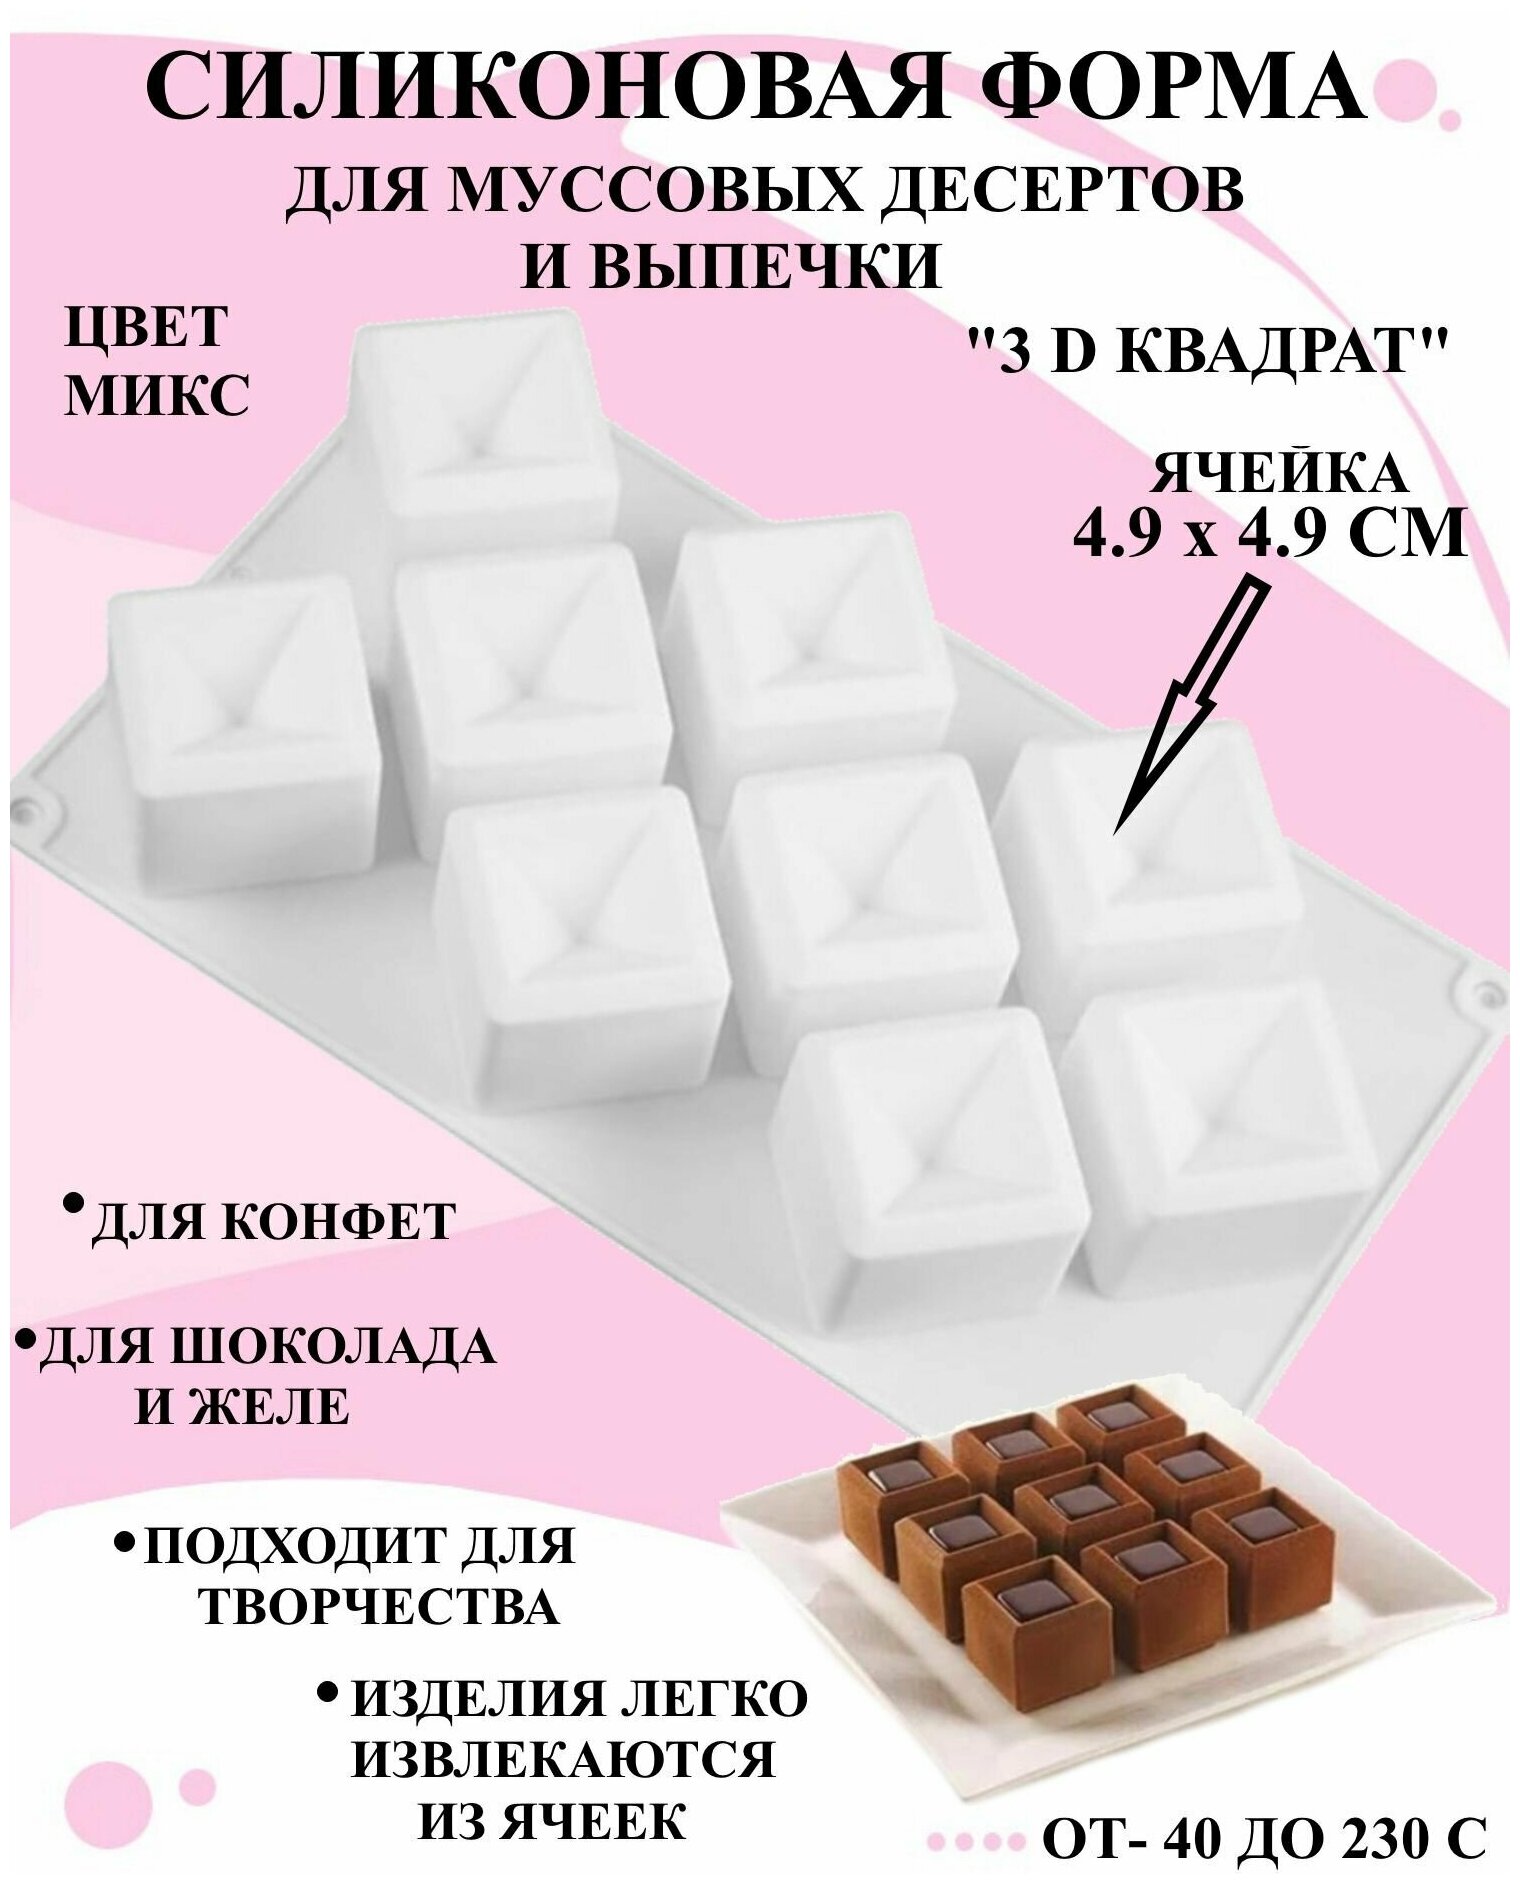 Форма для муссовых десертов вогнутый квадрат 29.4x17 см, форма кондитерская геометрический квадрат для конфет